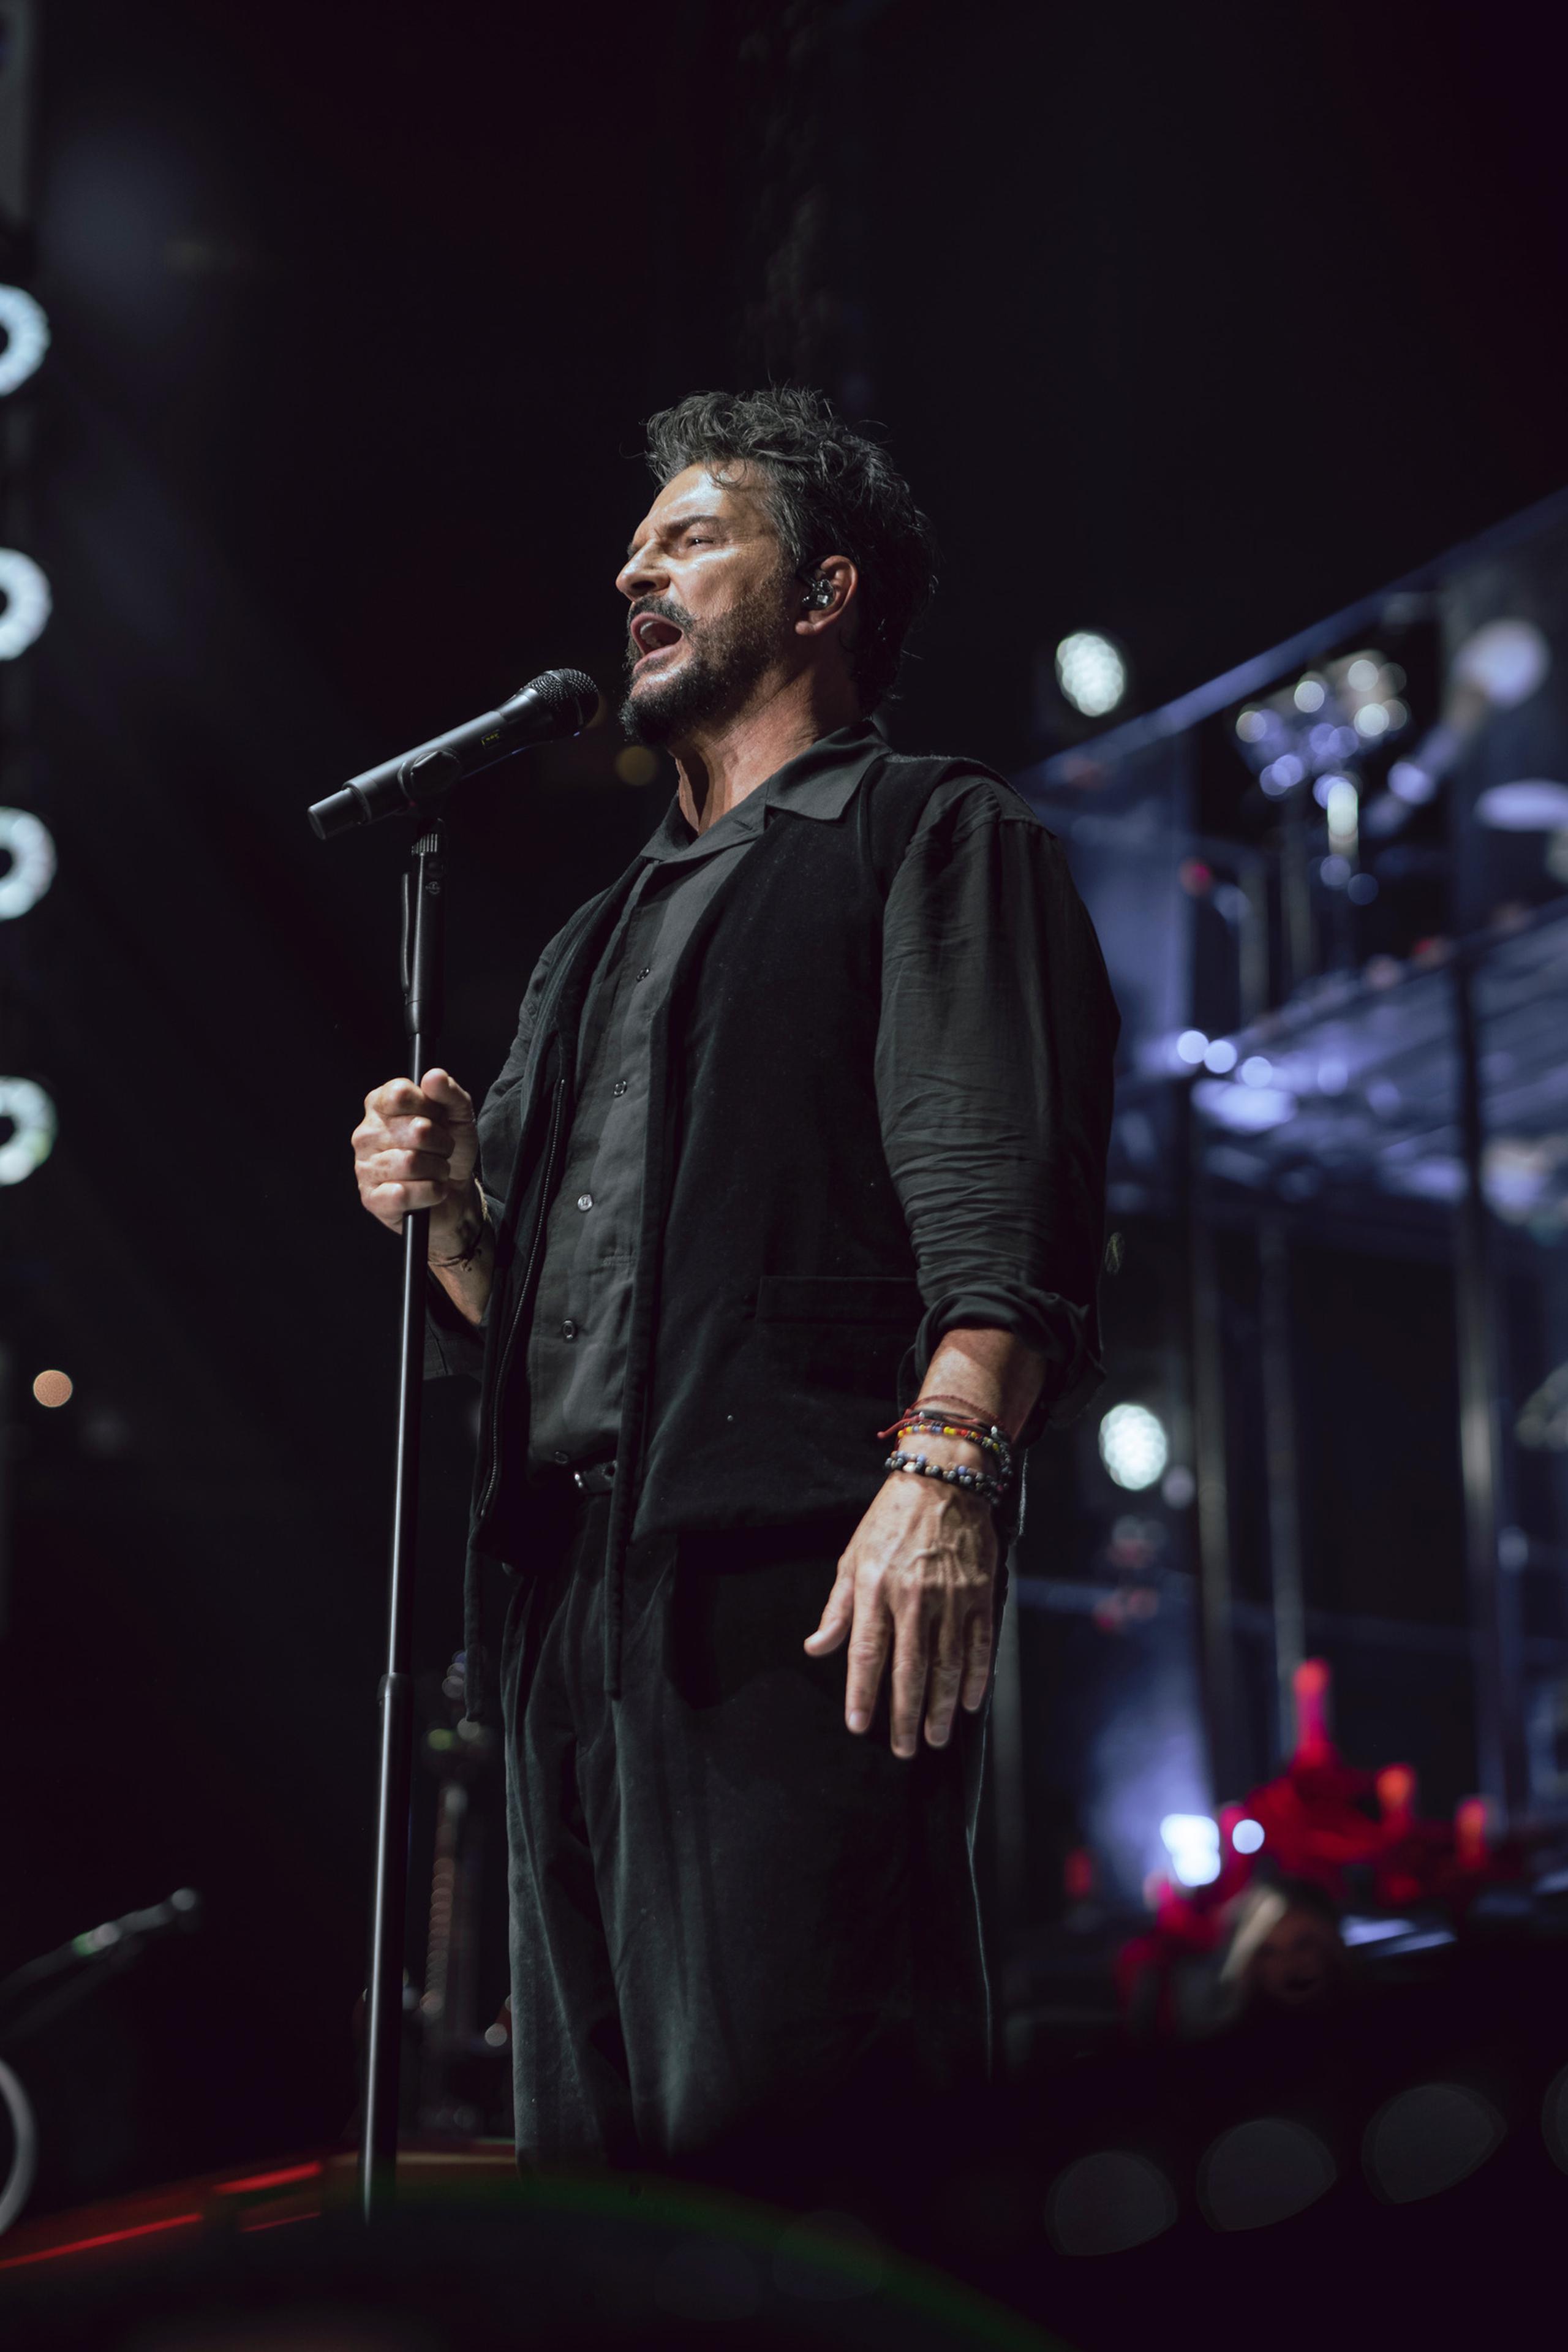 El cantautor ofreció dos funciones llenas a capacidad en el Madison Square Garden, como parte de la gira que lo traerá al Coliseo de Puerto Rico el 30 de junio y 1 de julio.